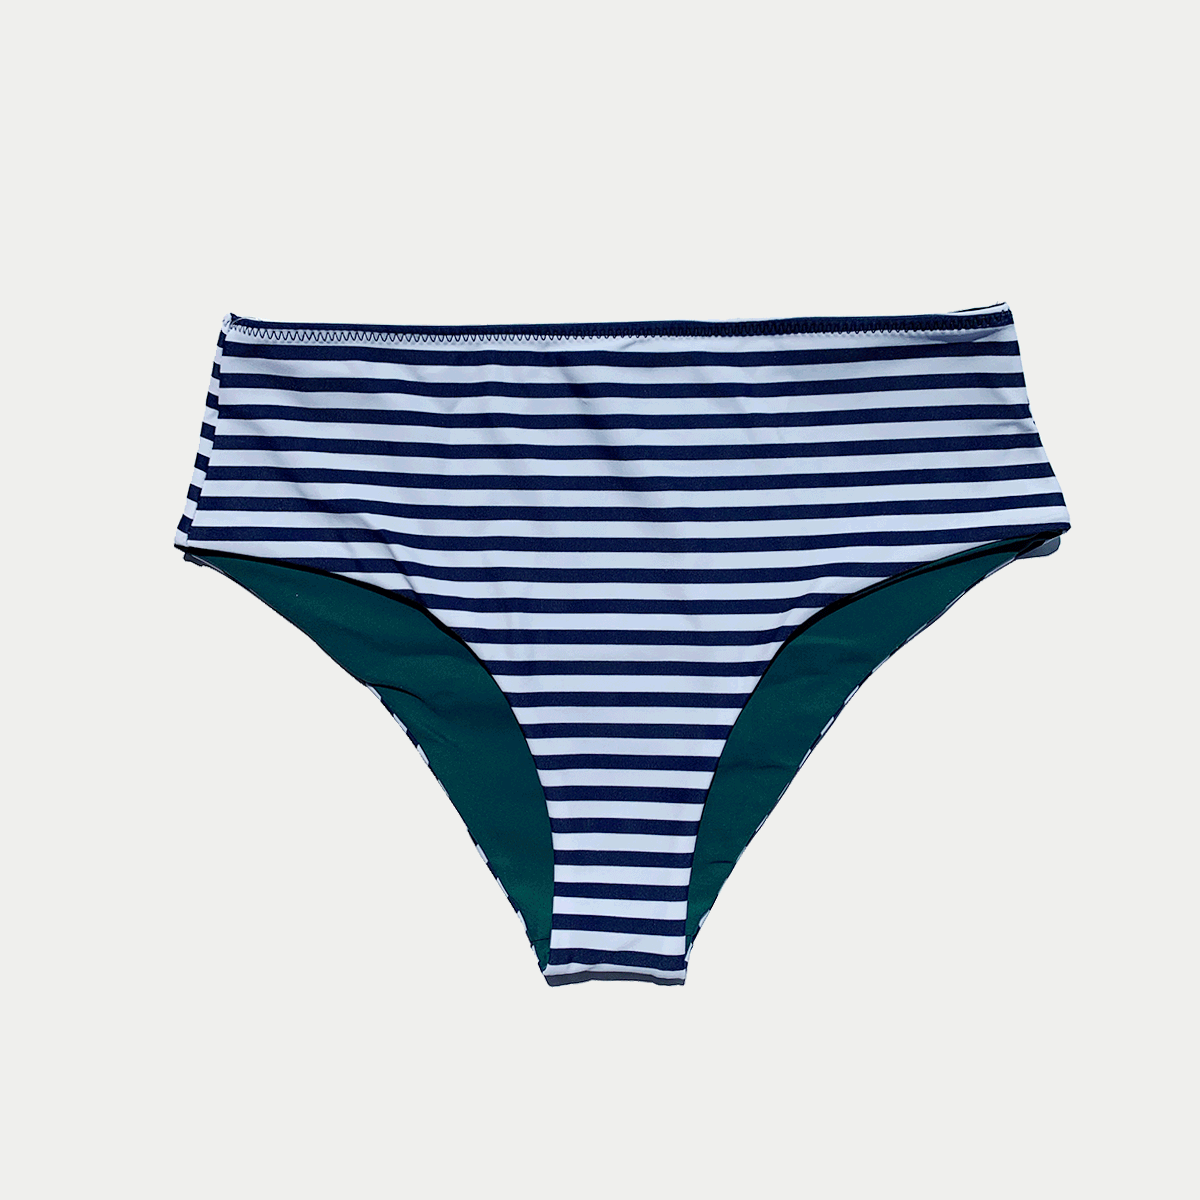 Brasilia Reversible Bikini Bottom - Navy Stripe